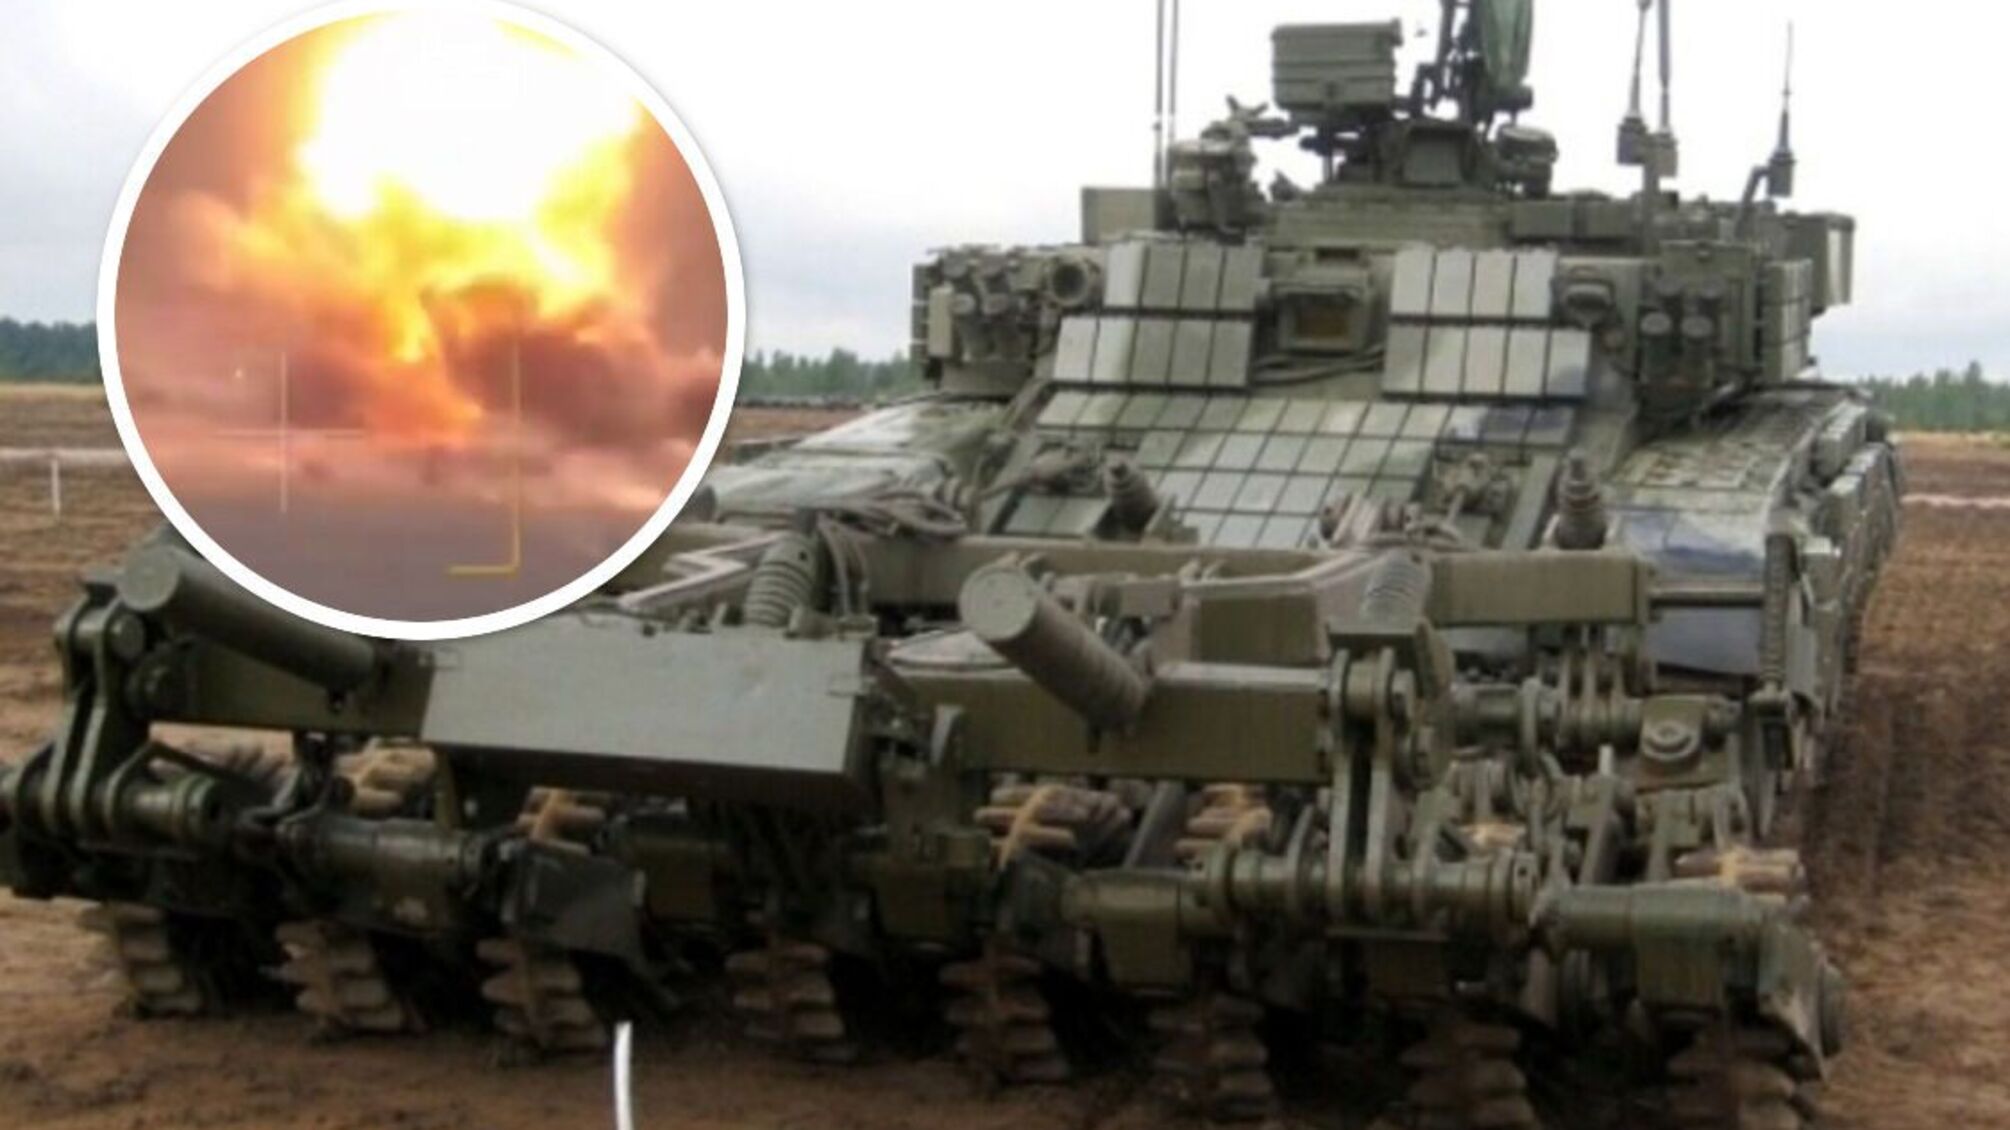 Мар'їнка: ЗСУ поцілили у танк Т-90 з тралом, який знешкоджував підходи до українських позицій - відео